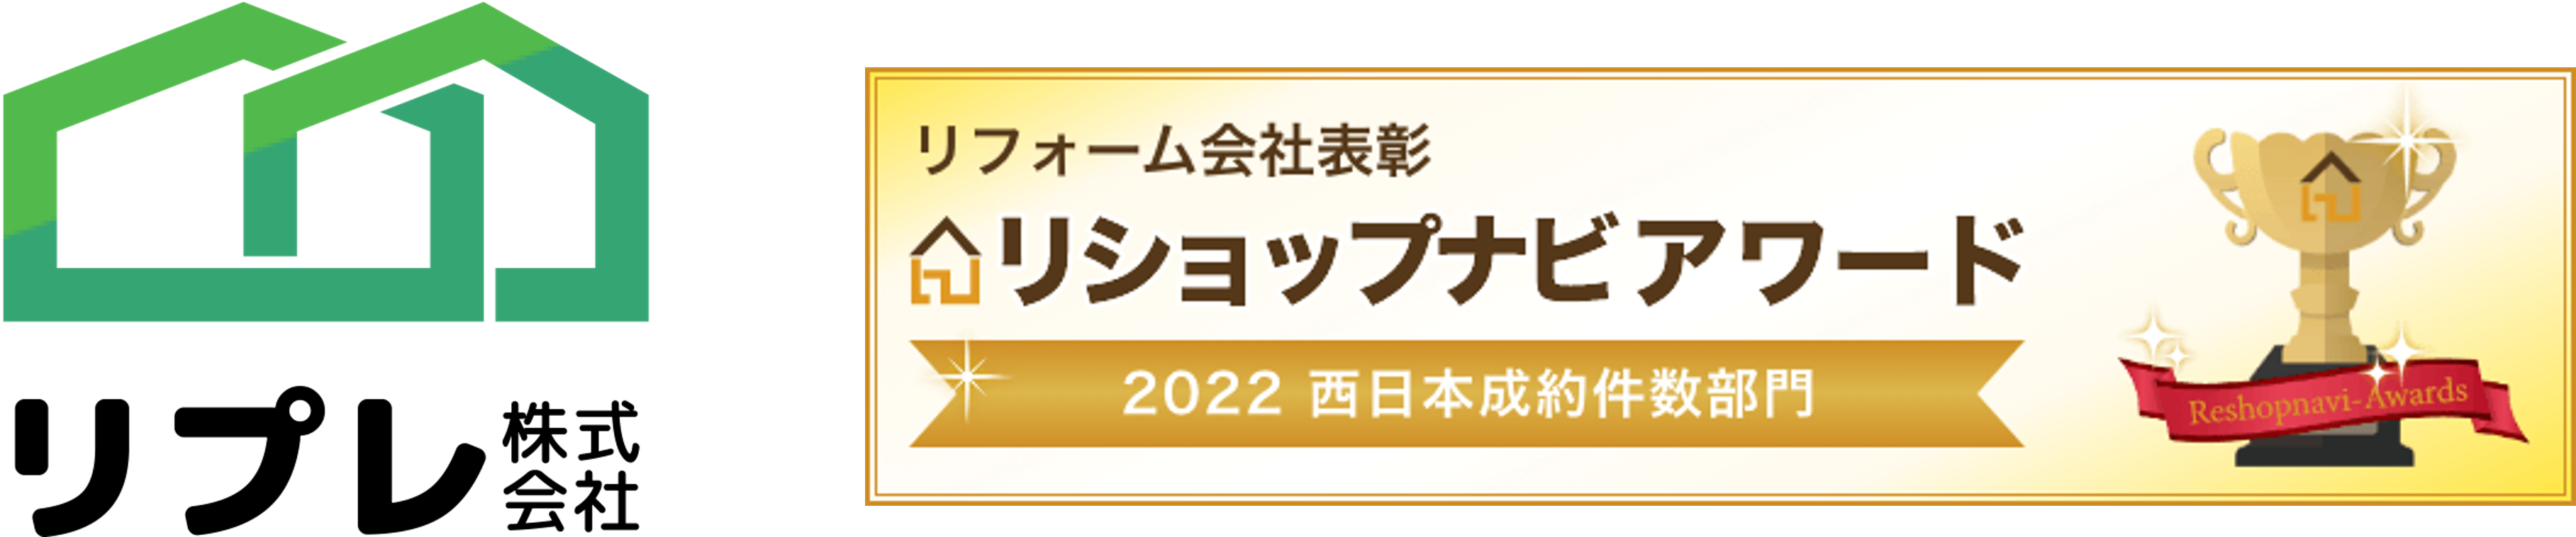 リプレ株式会社が「リショップナビアワード 2022」西日本成約件数部門にて1位を受賞